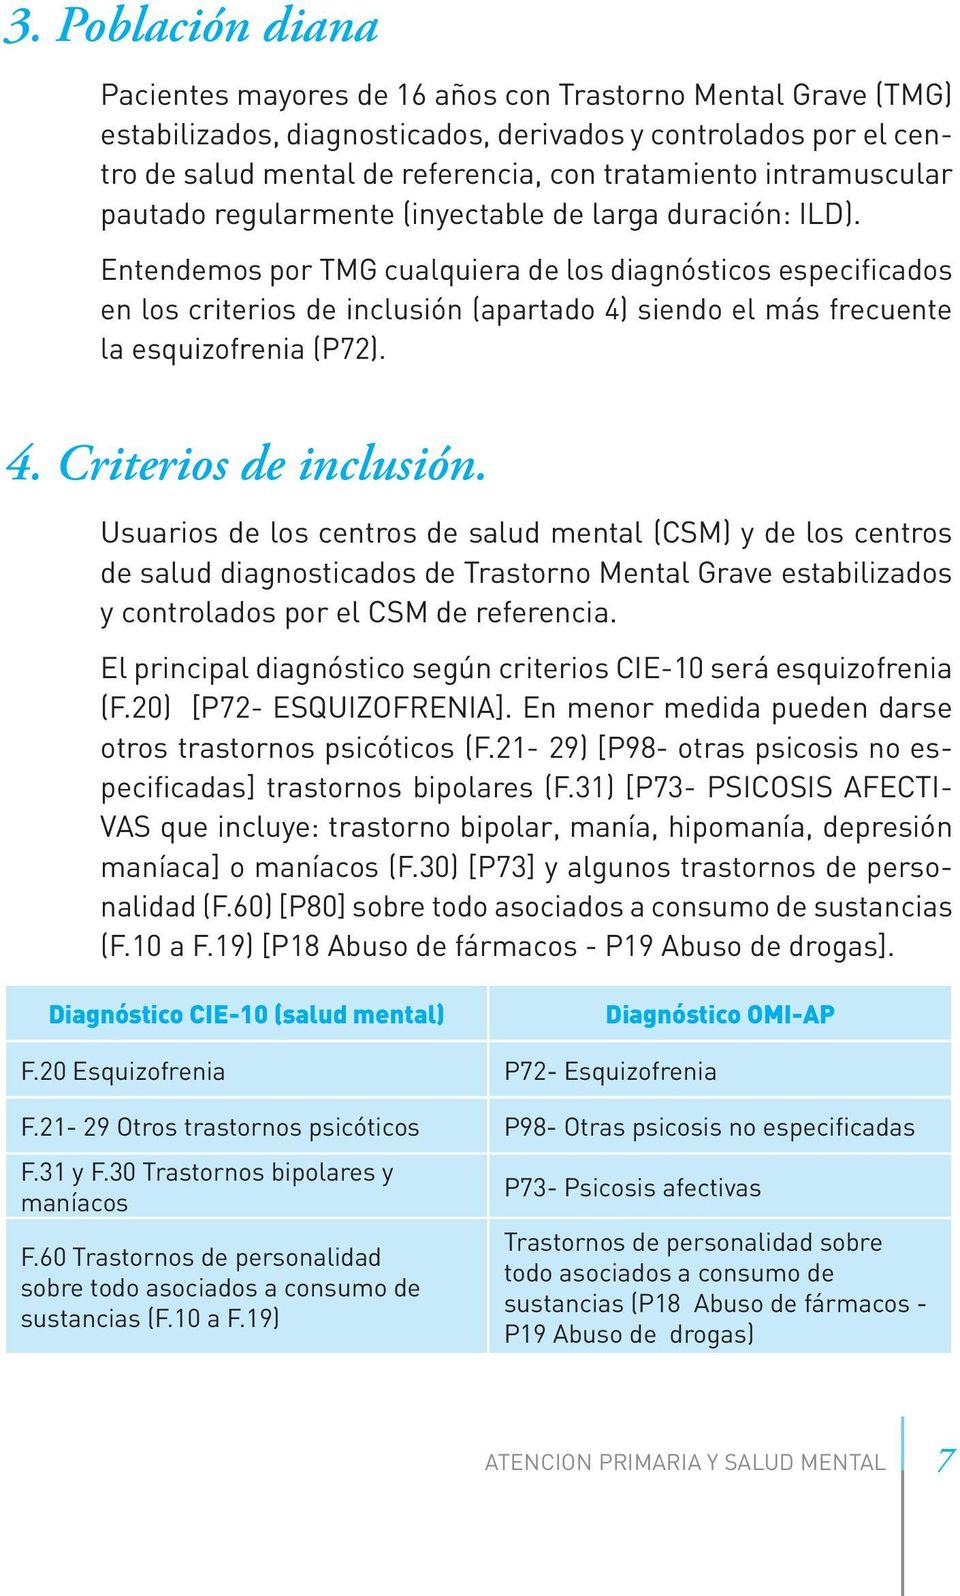 Entendemos por TMG cualquiera de los diagnósticos especificados en los criterios de inclusión (apartado 4) siendo el más frecuente la esquizofrenia (P72). 4. Criterios de inclusión.